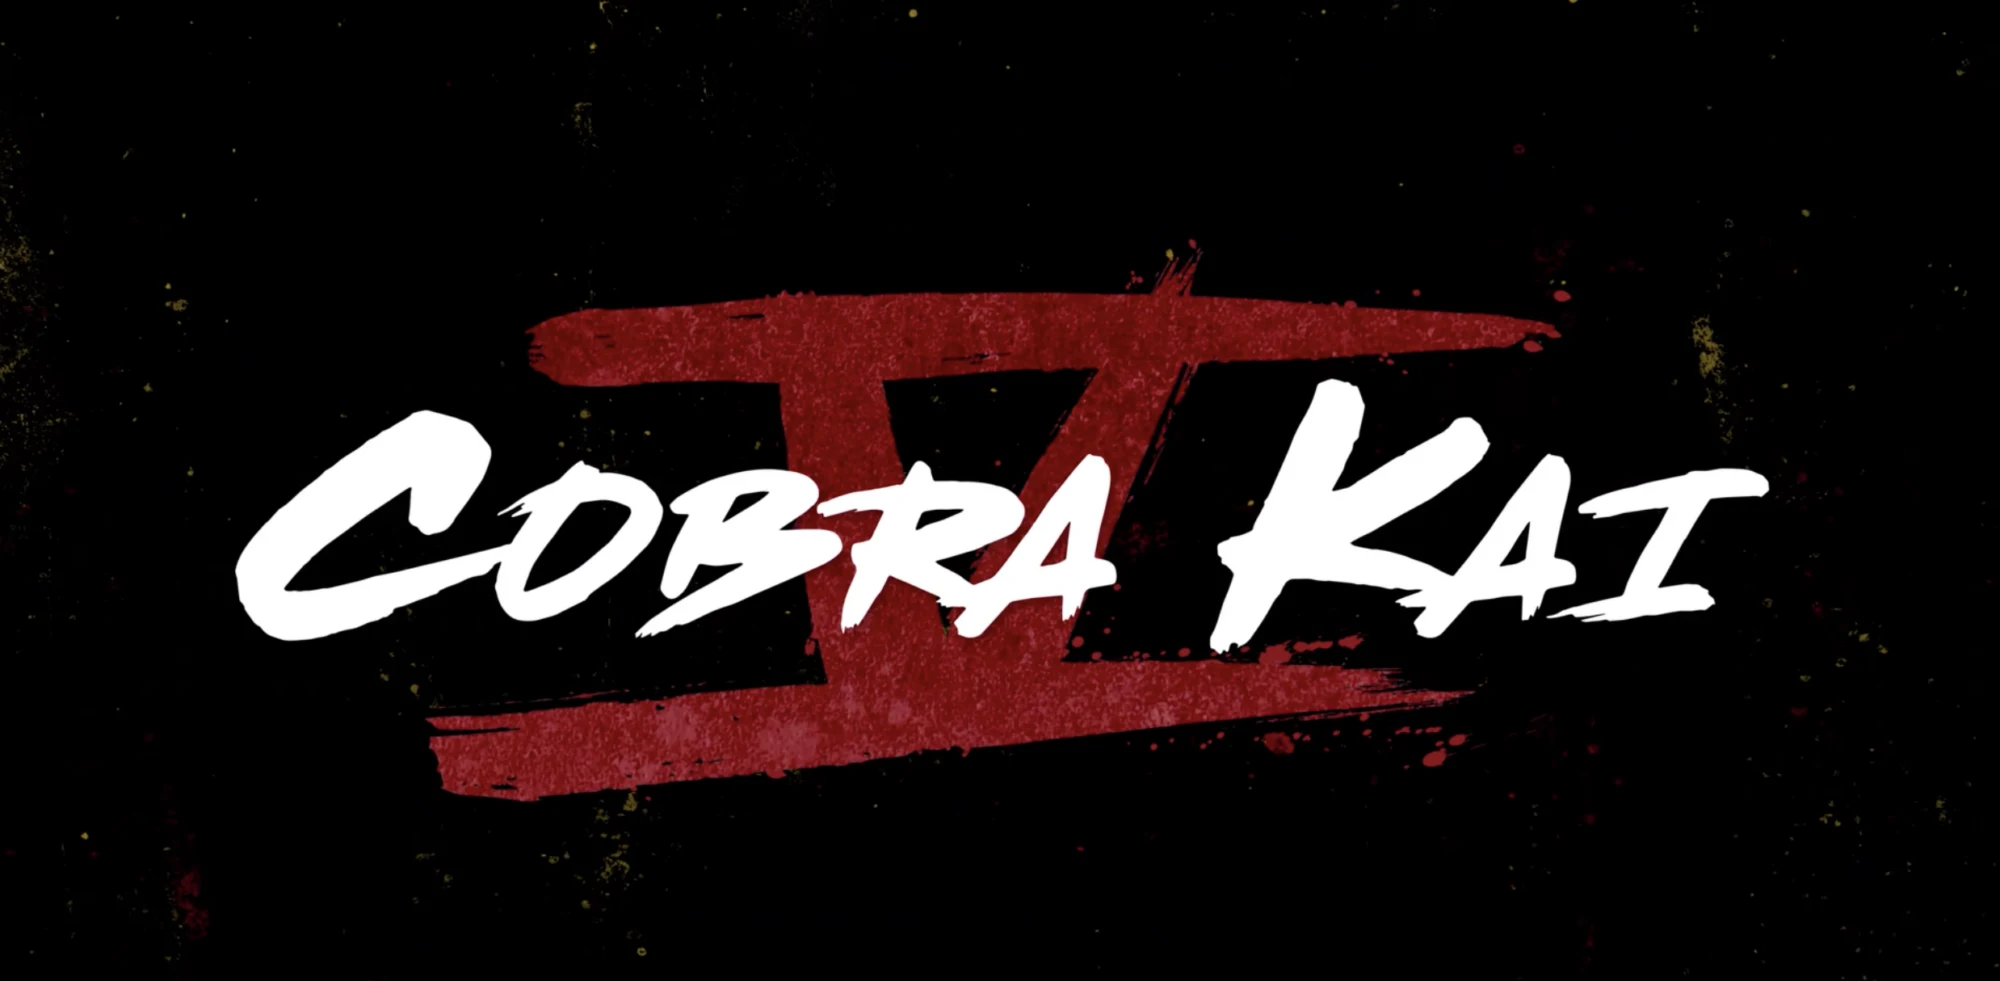 Why Cobra Kai is Ending With Season 6